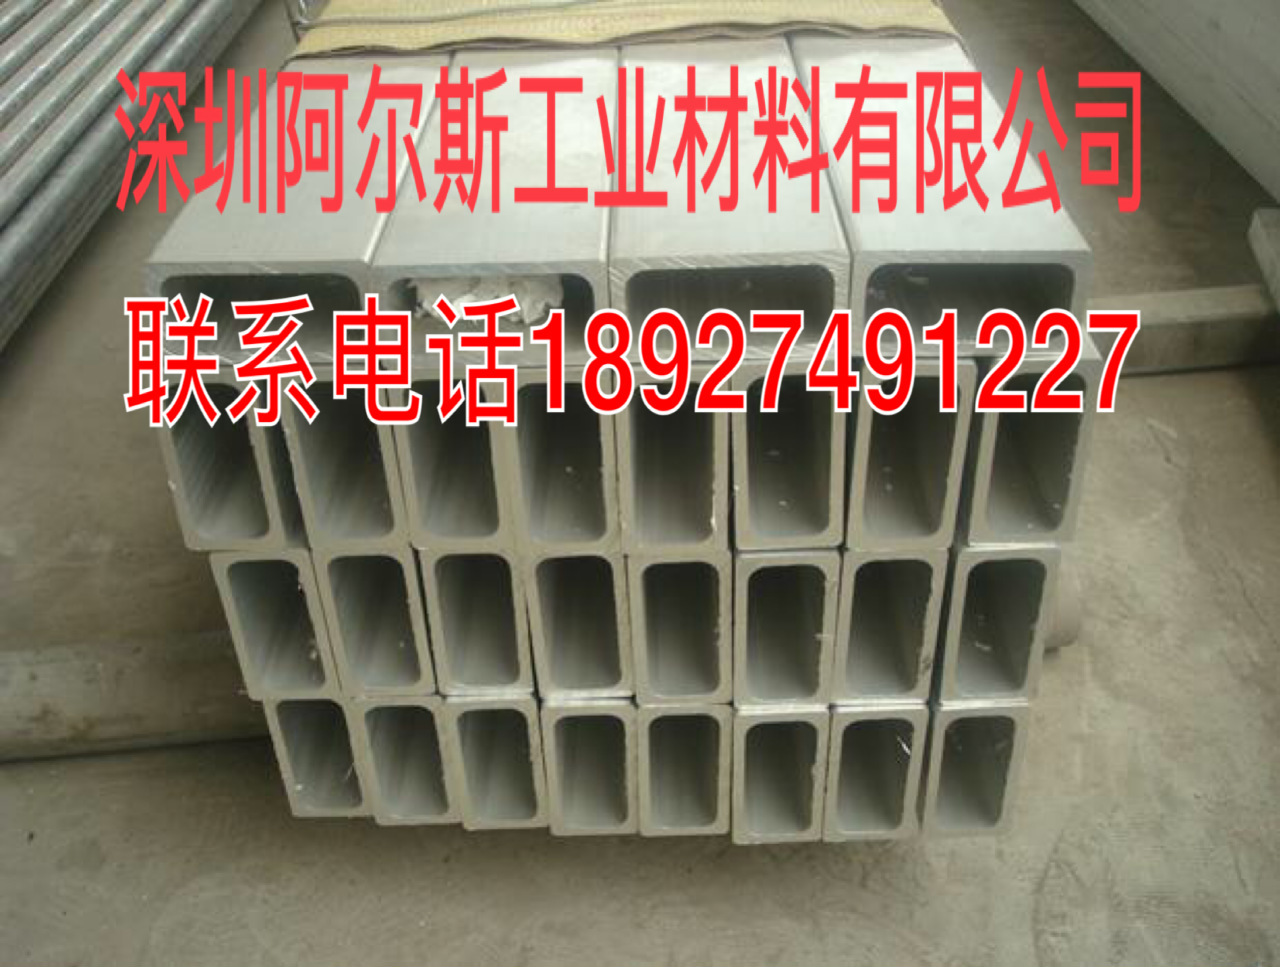 销售 铝方通 铝方管 超大铝管 正方形铝管 常规异型均可定制